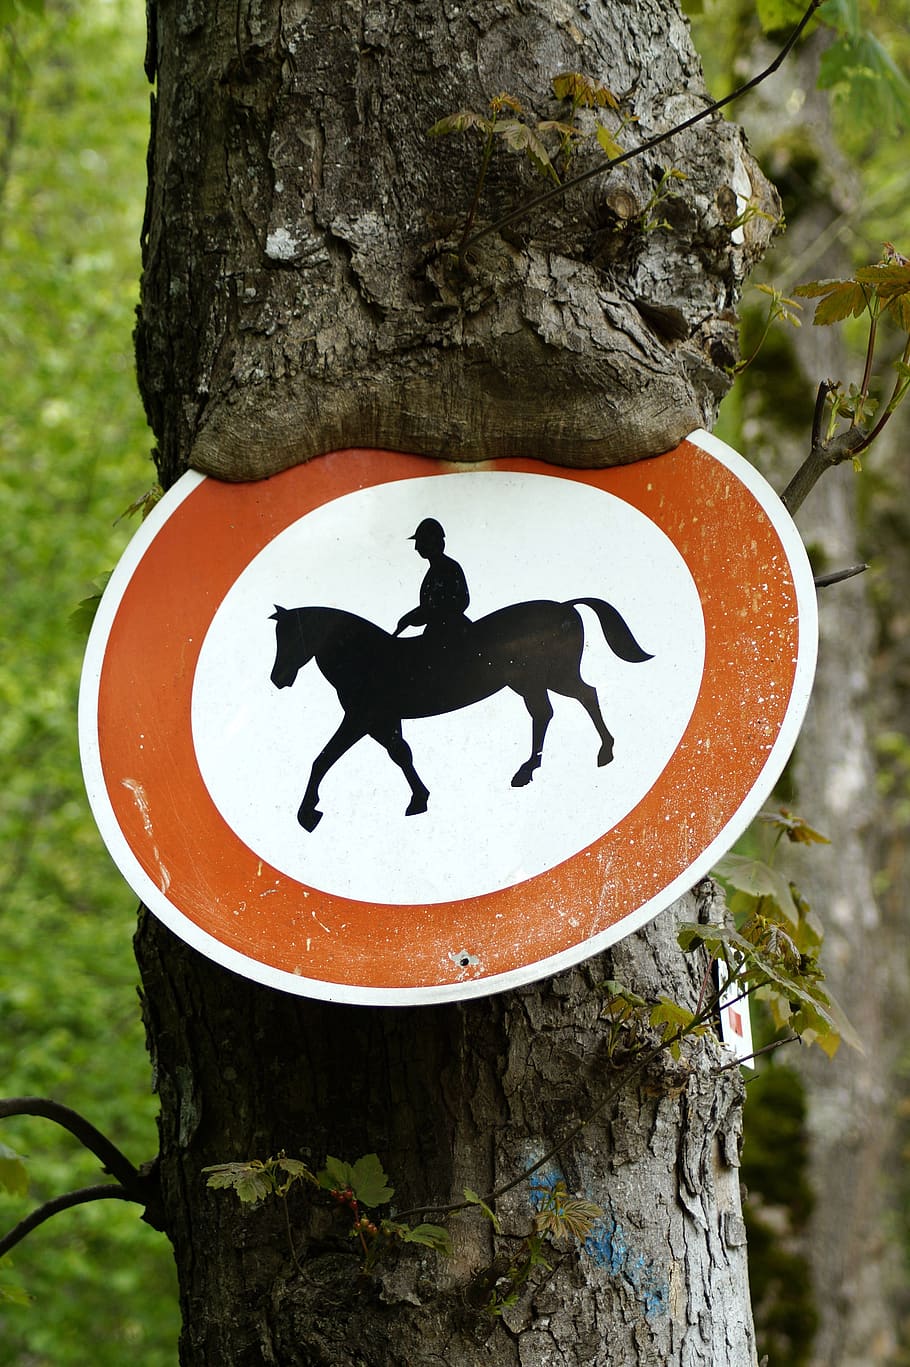 horse riding prohibited, tree, shield, horses prohibited, ride, prohibited, horse, traffic sign, sign, symbol